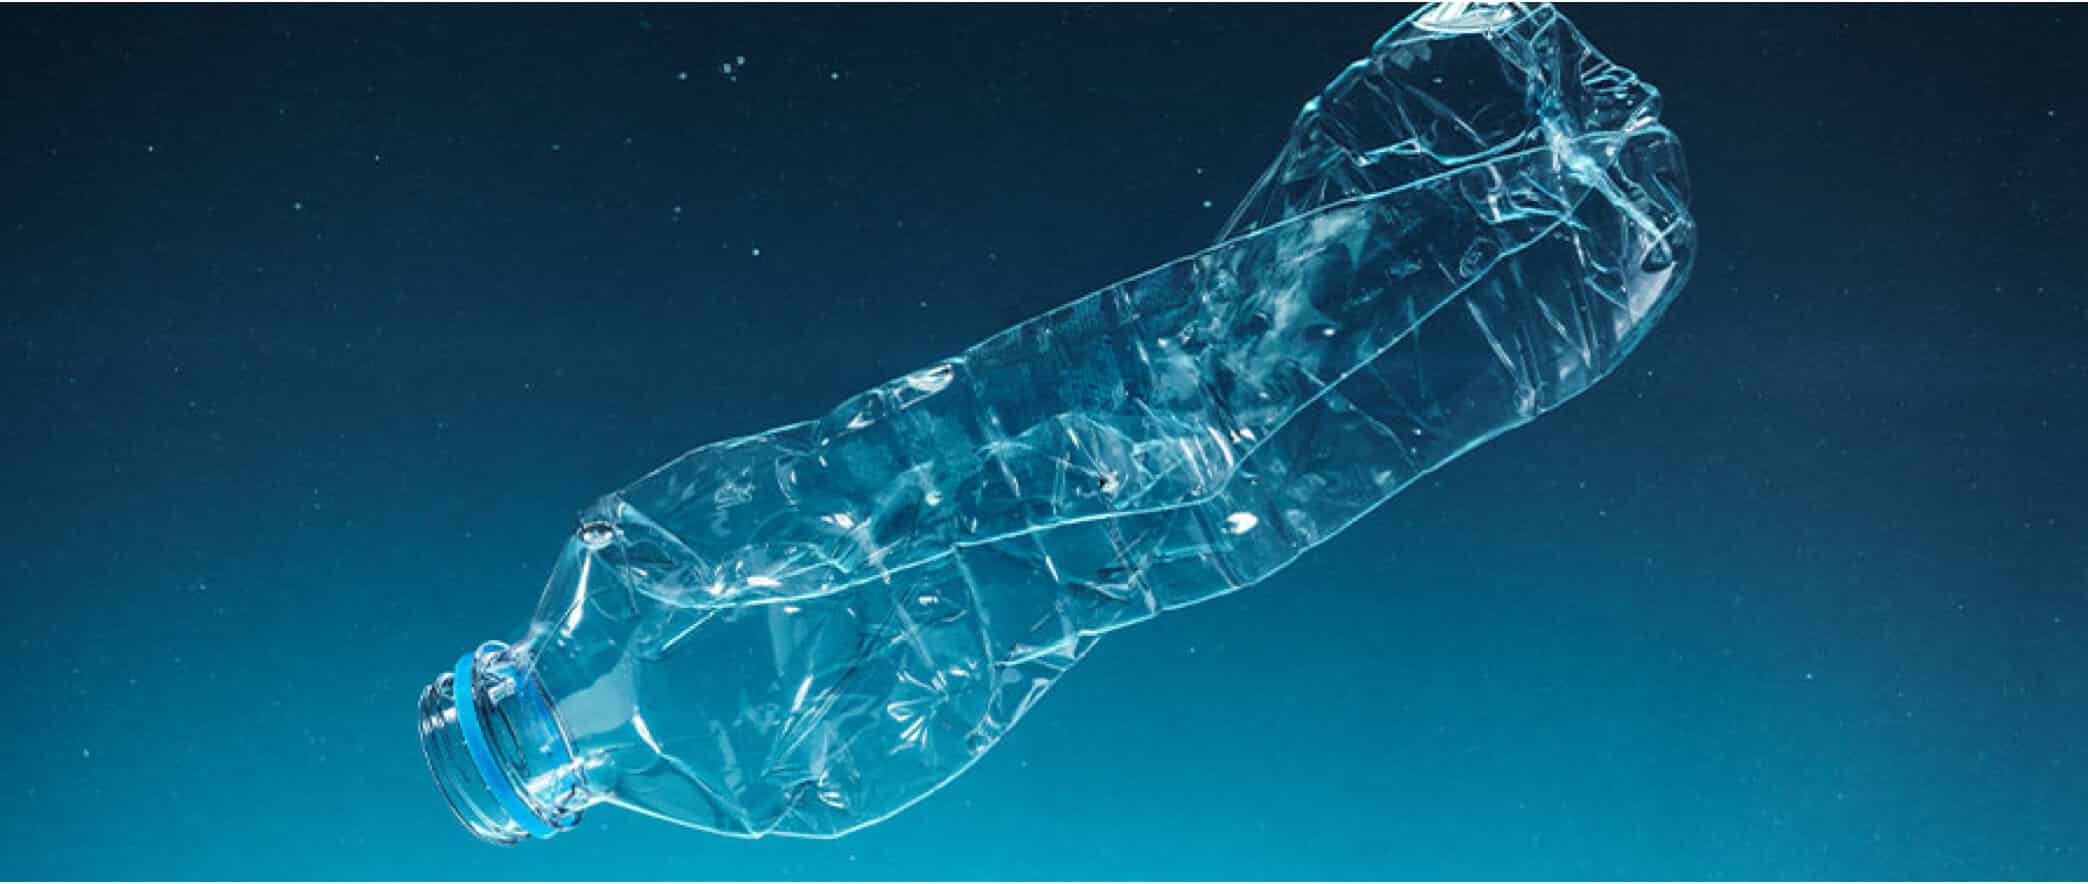 Du plastique se retrouve dans l’eau en bouteille du monde entier